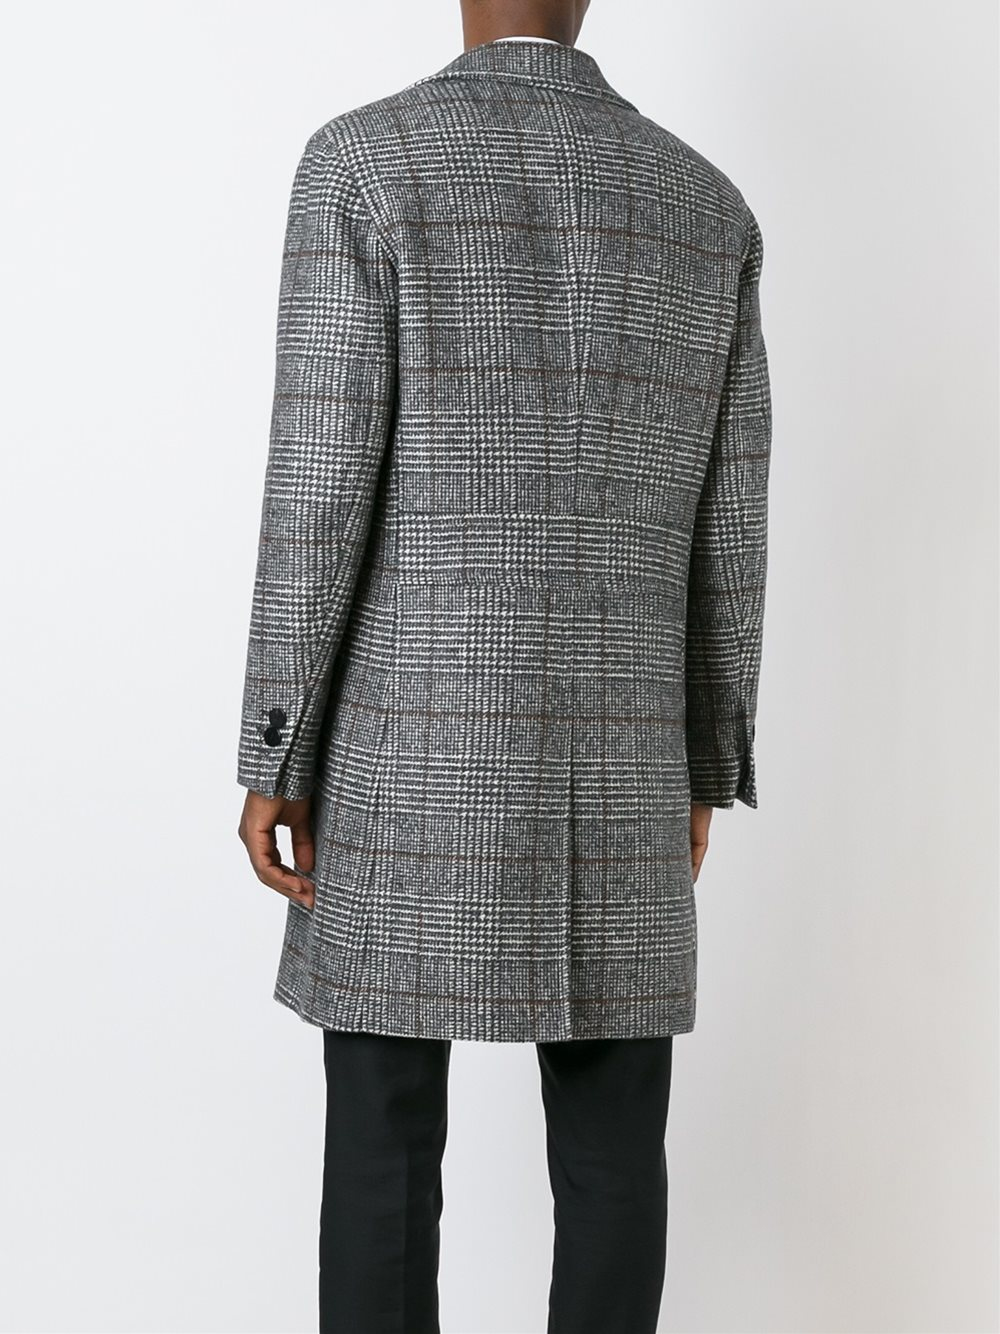 Neil barrett Virgin Wool Coat in Gray for Men | Lyst